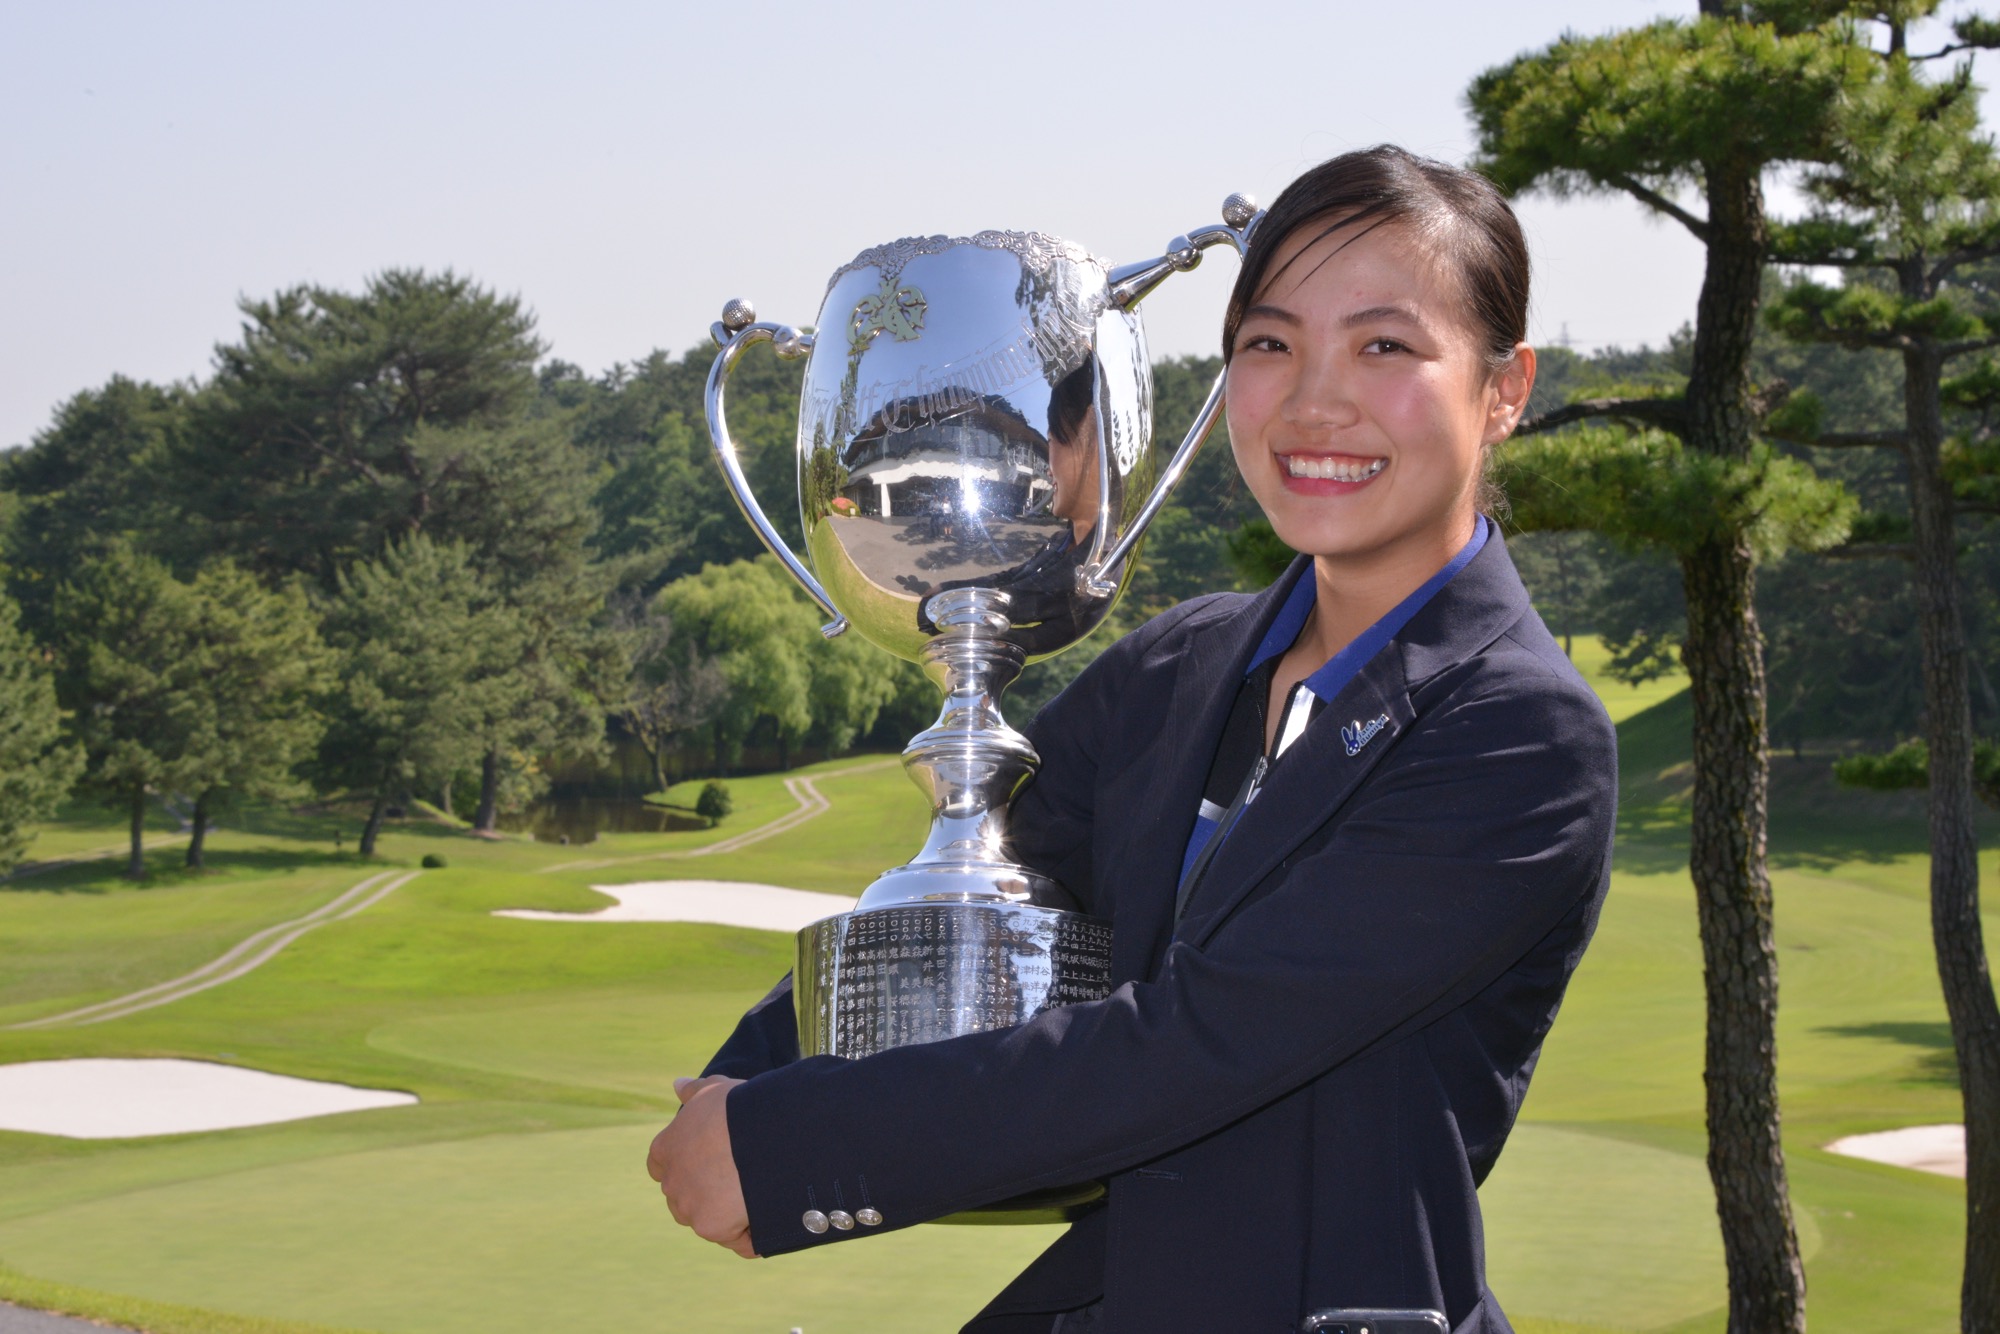 アマチュア ゴルフ 2019 日本